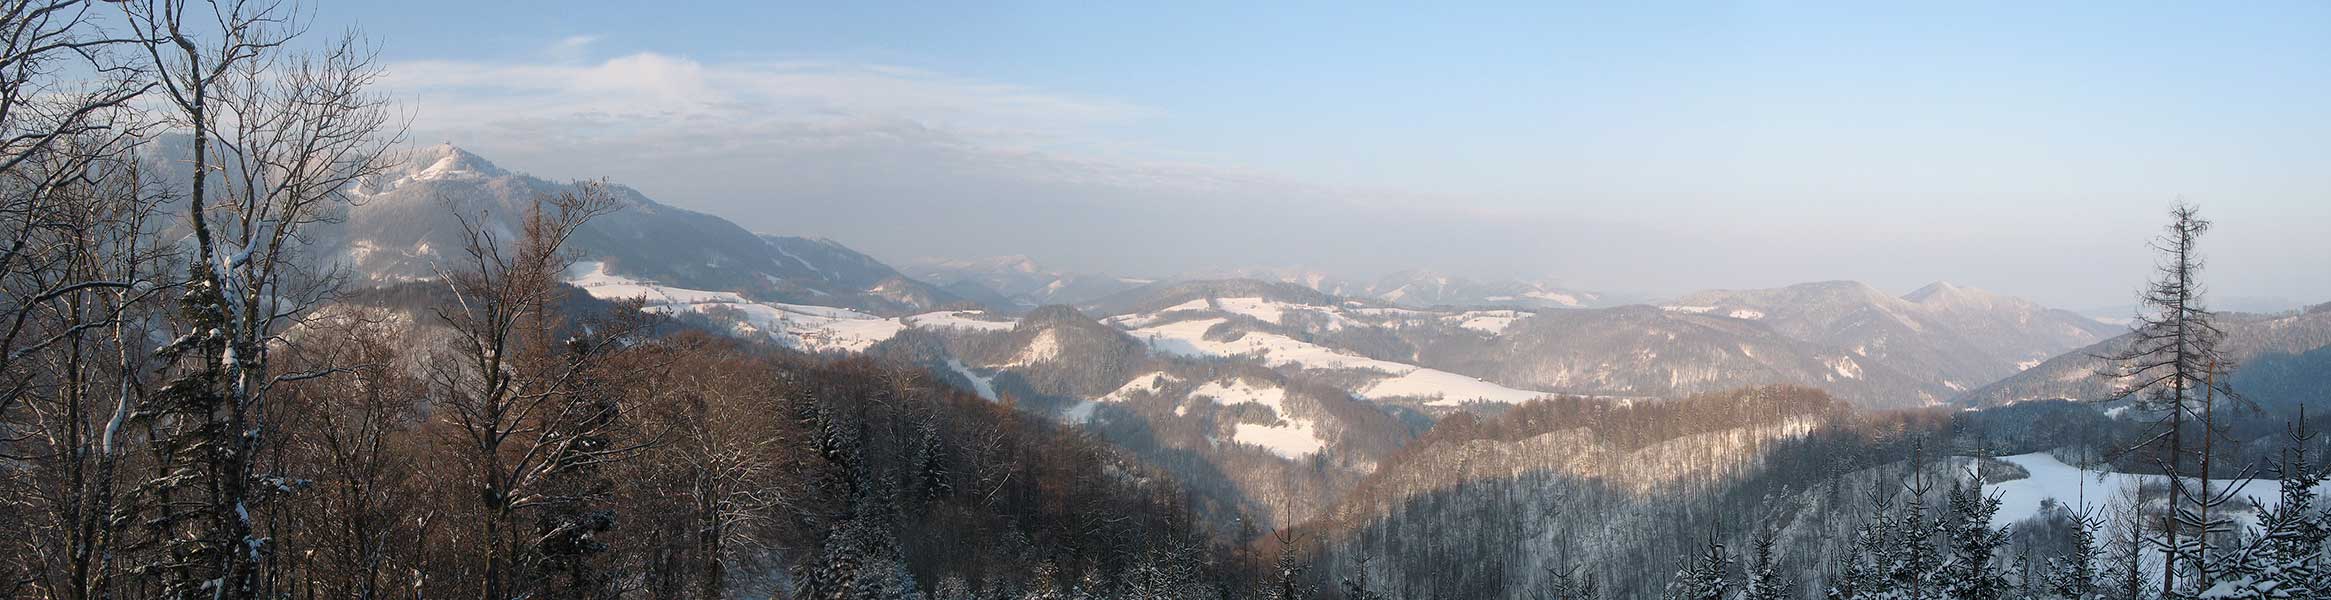 Panorama vom Muckenkogel bis ins Flachland